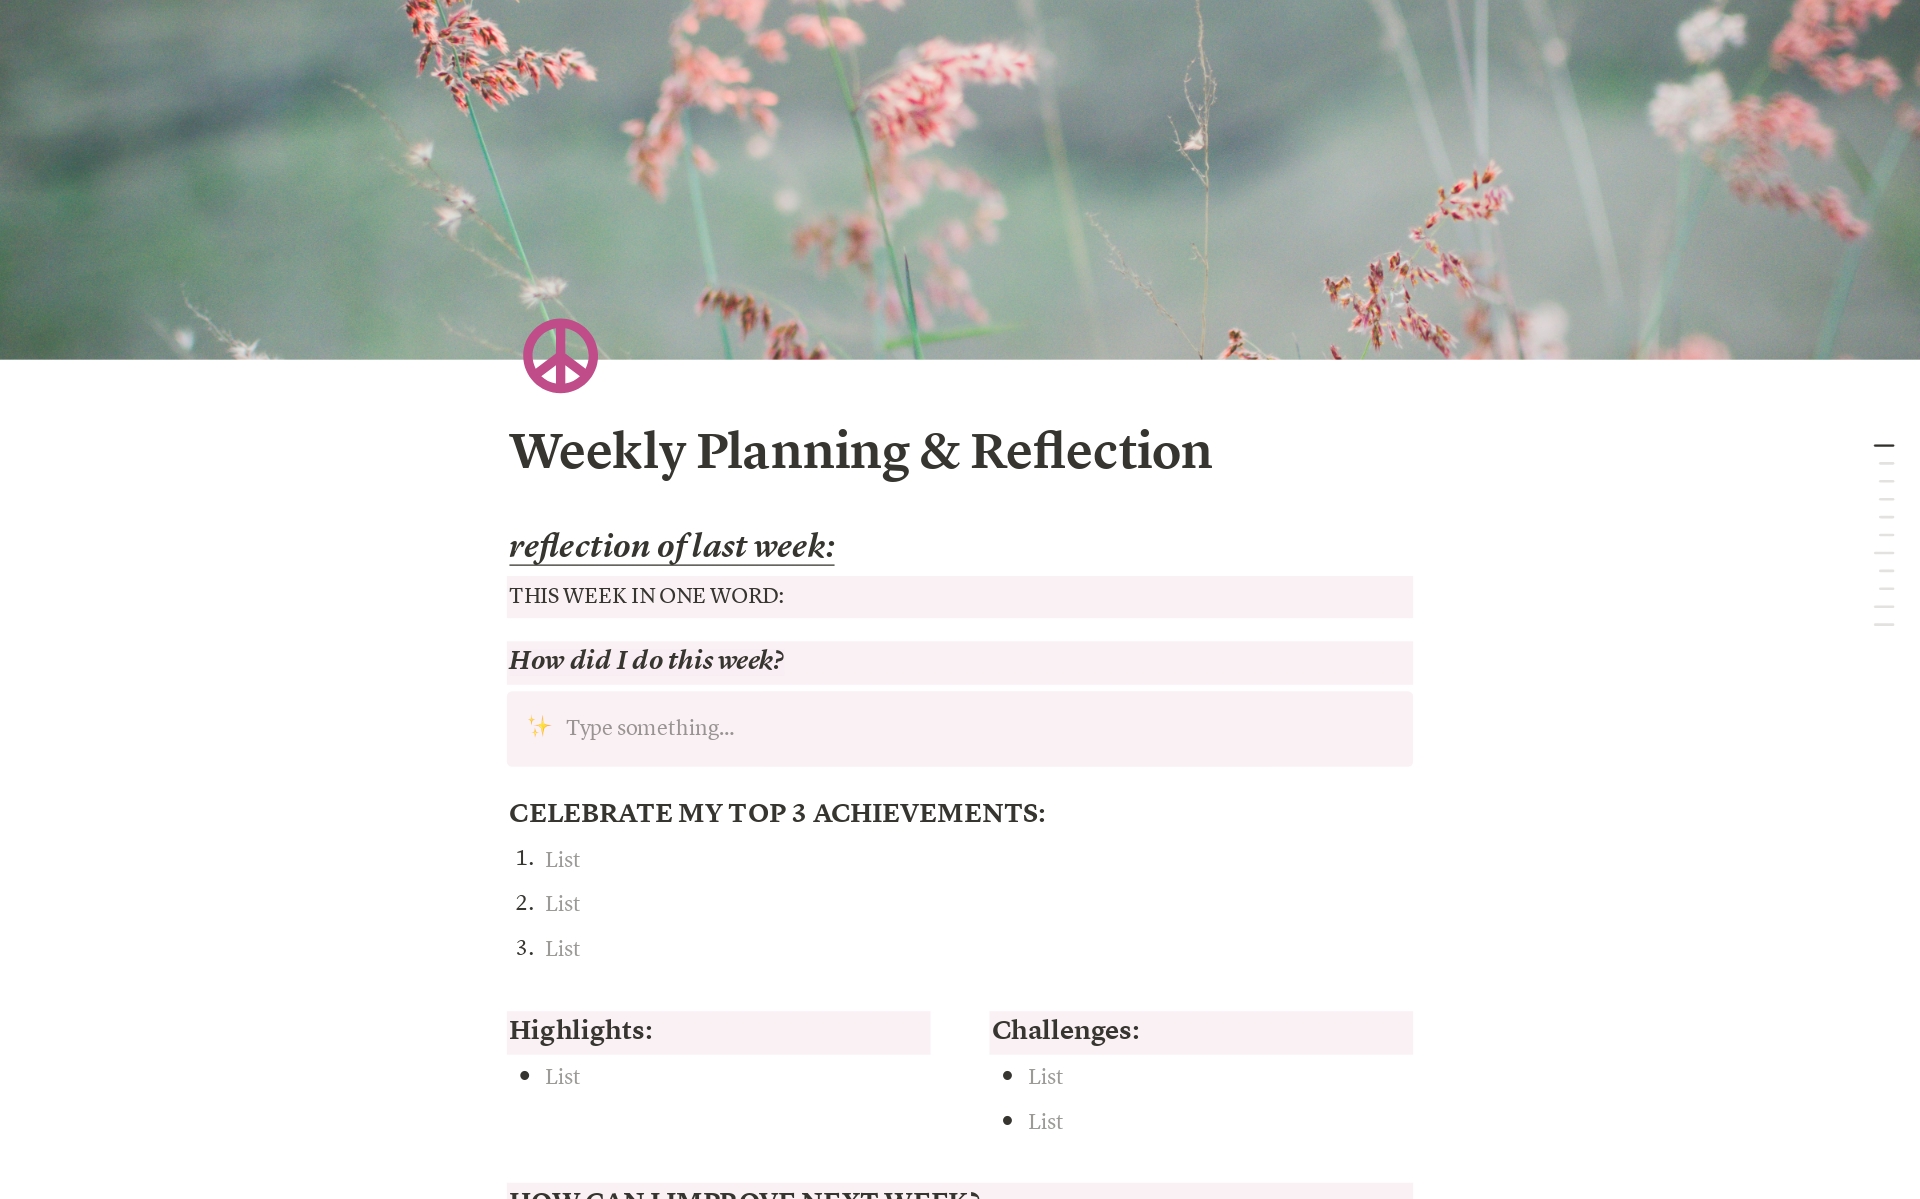 Vista previa de una plantilla para Weekly Planning & Reflection